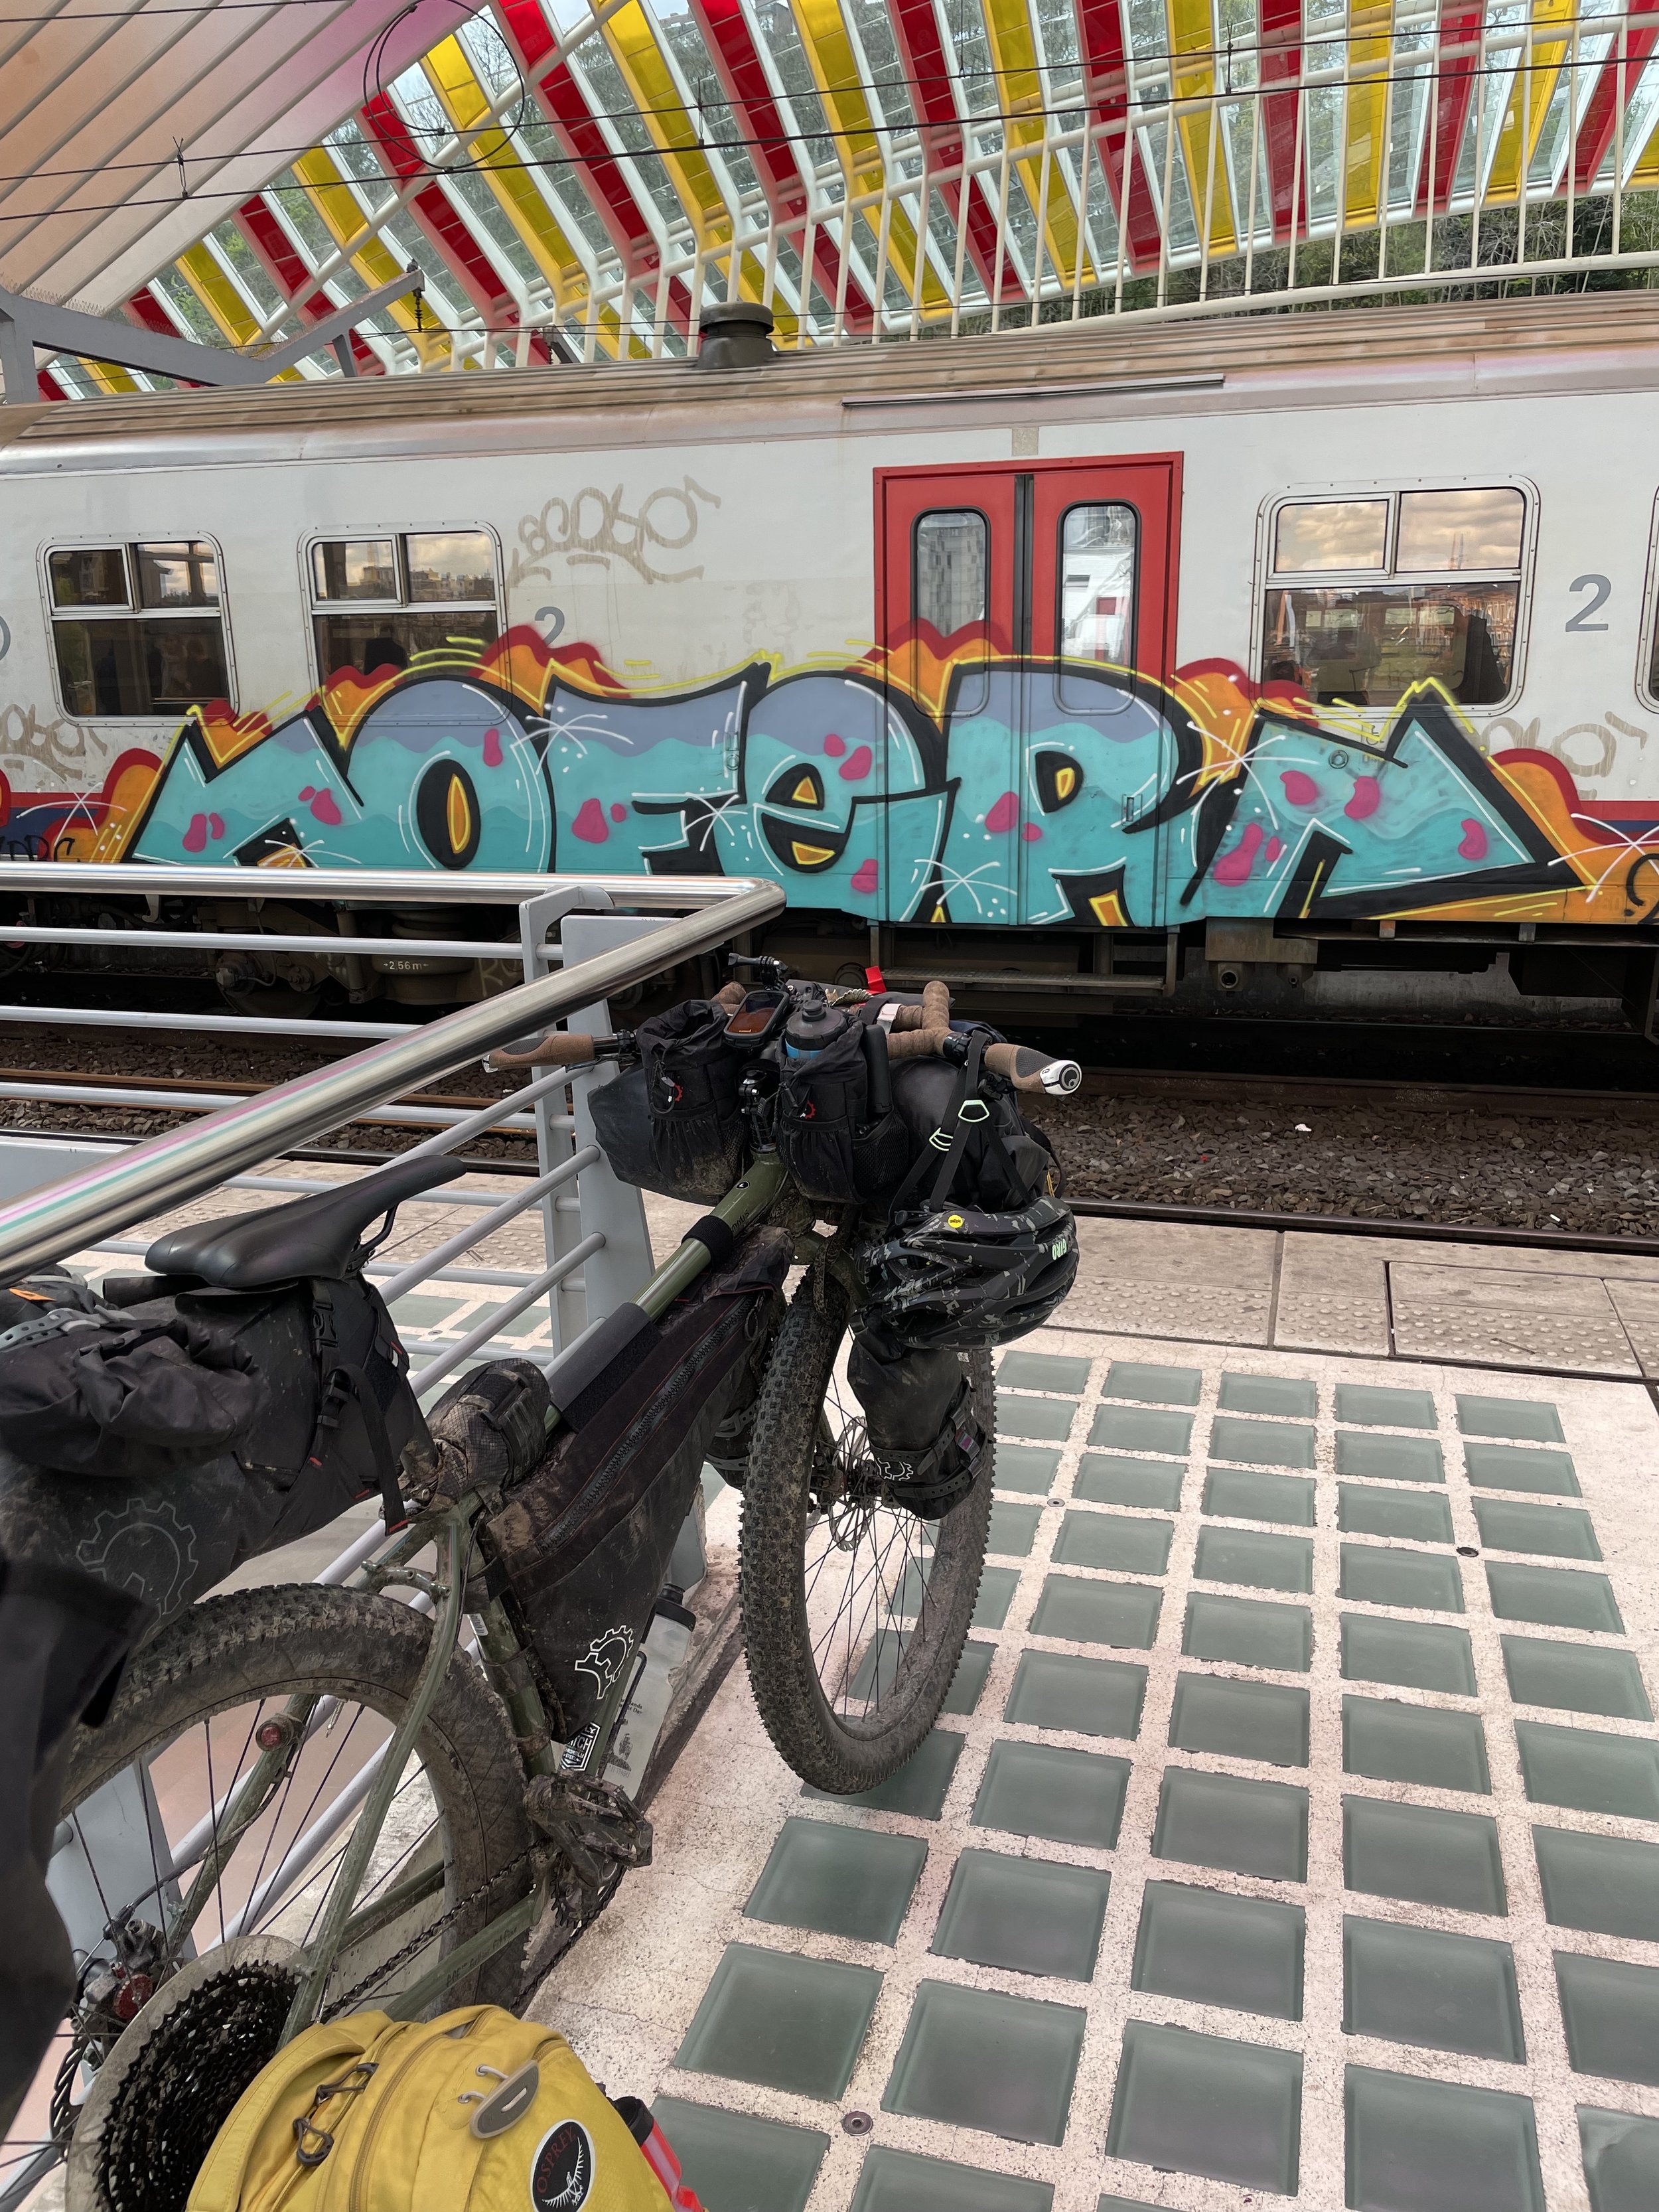 Bikes, Trains, Art!